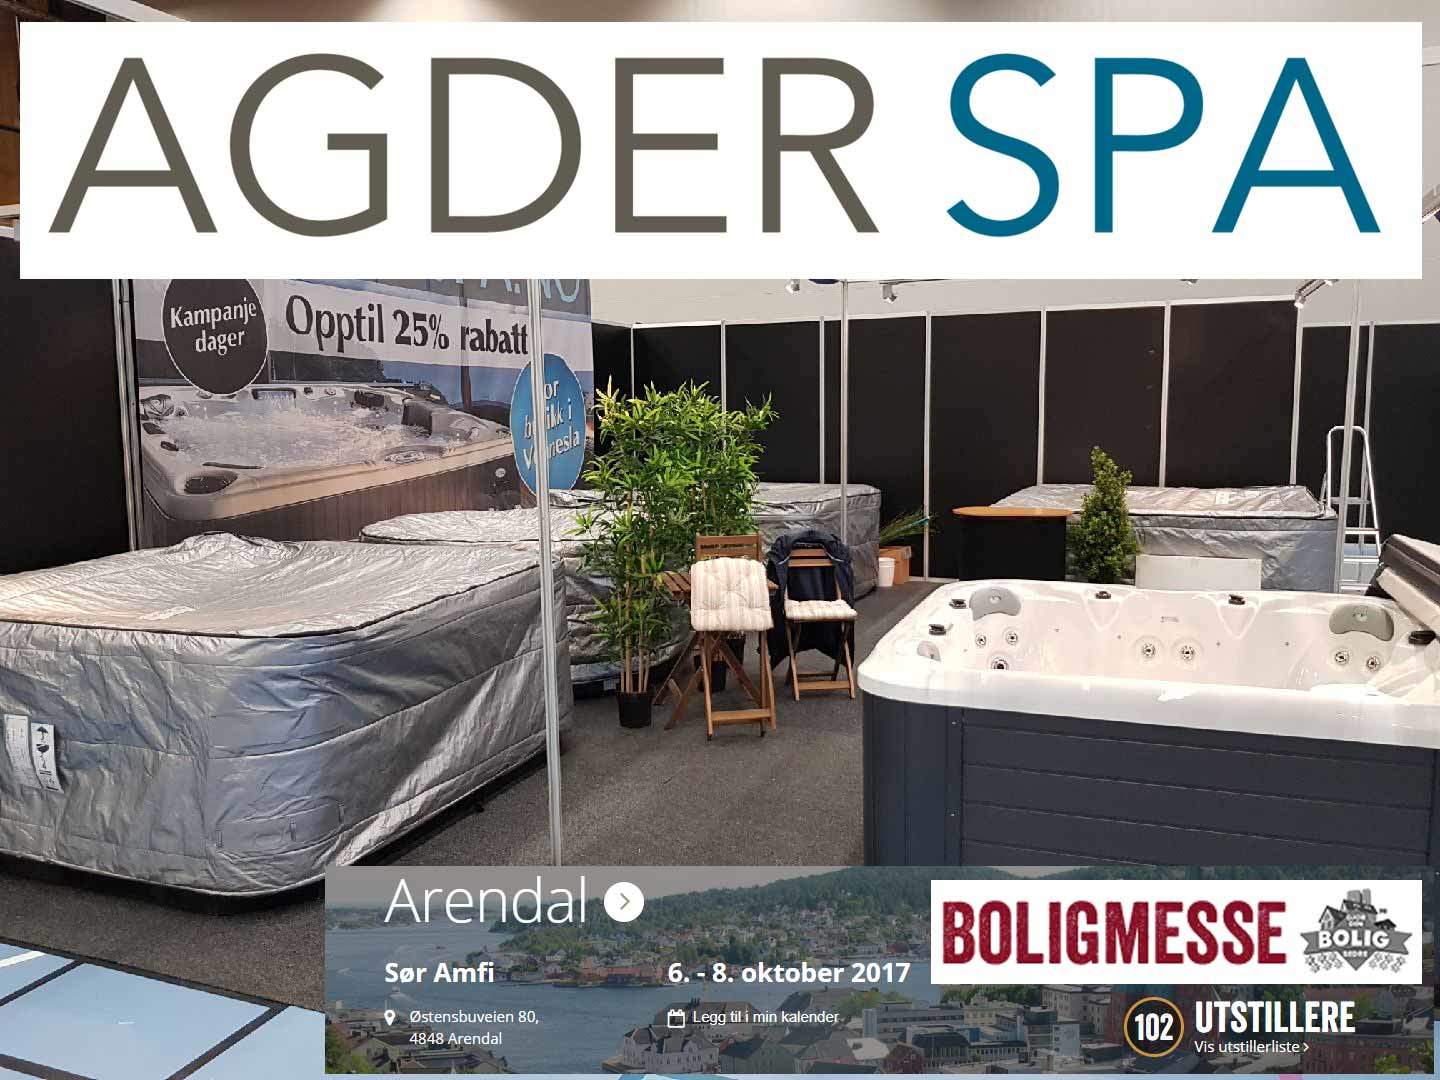 Agder Spa på Boligmessen i Arendal oktober 2017